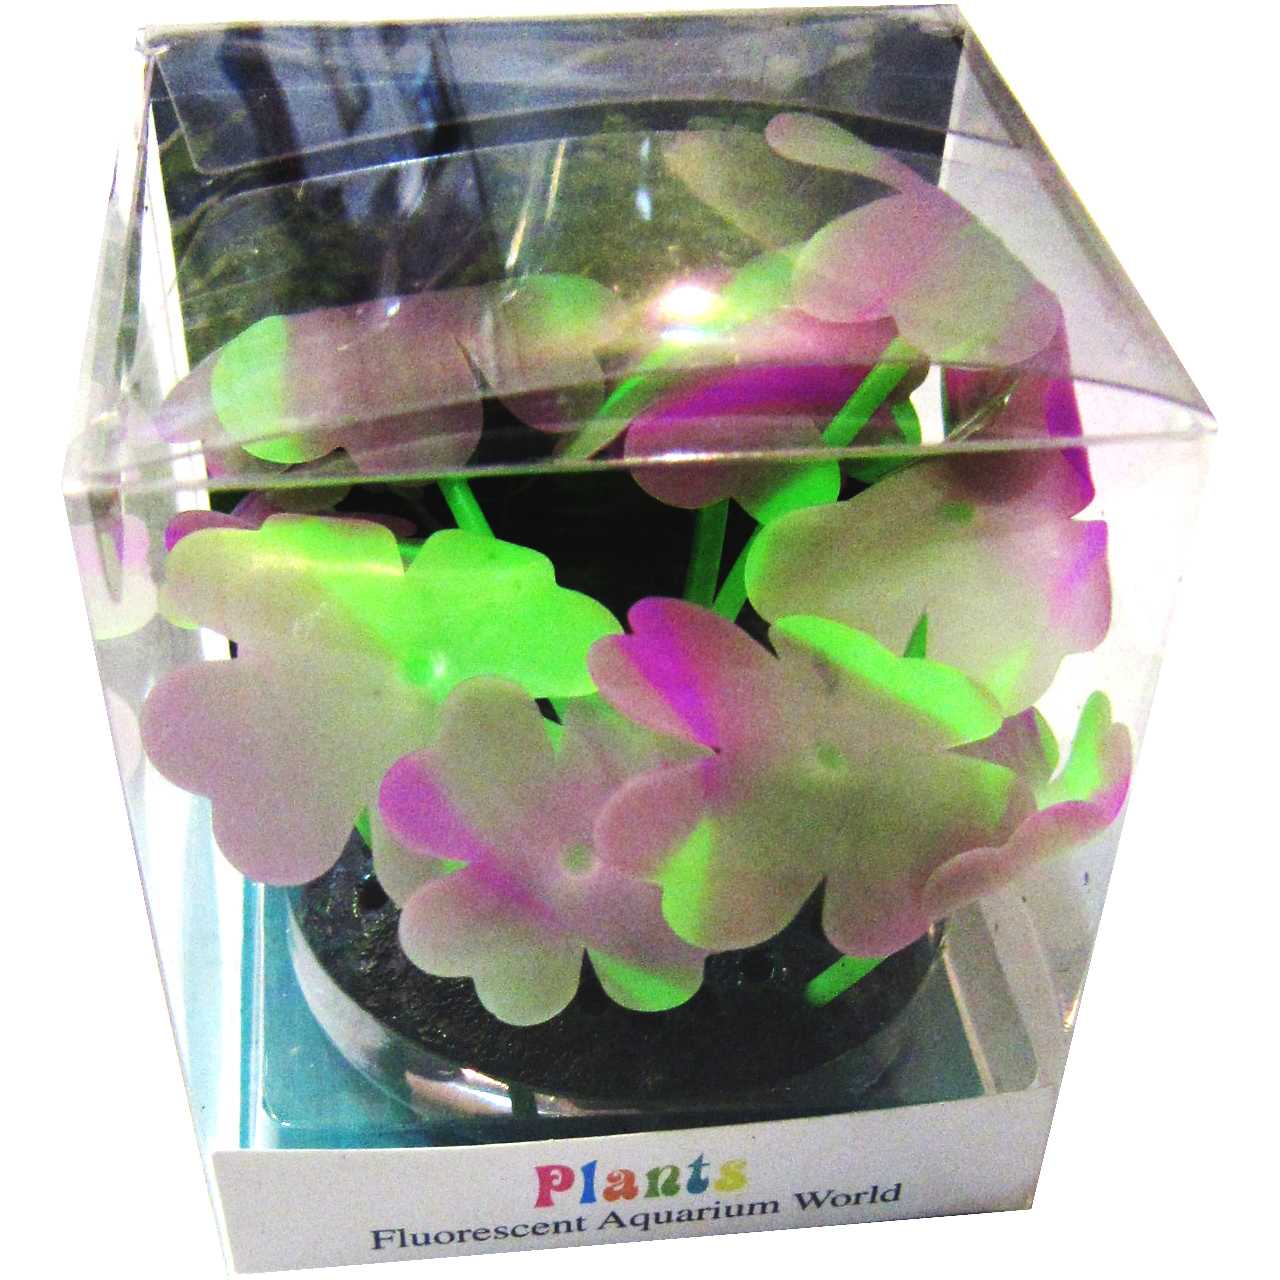 مرجان ژله ای پلنتس مدل fluorescent